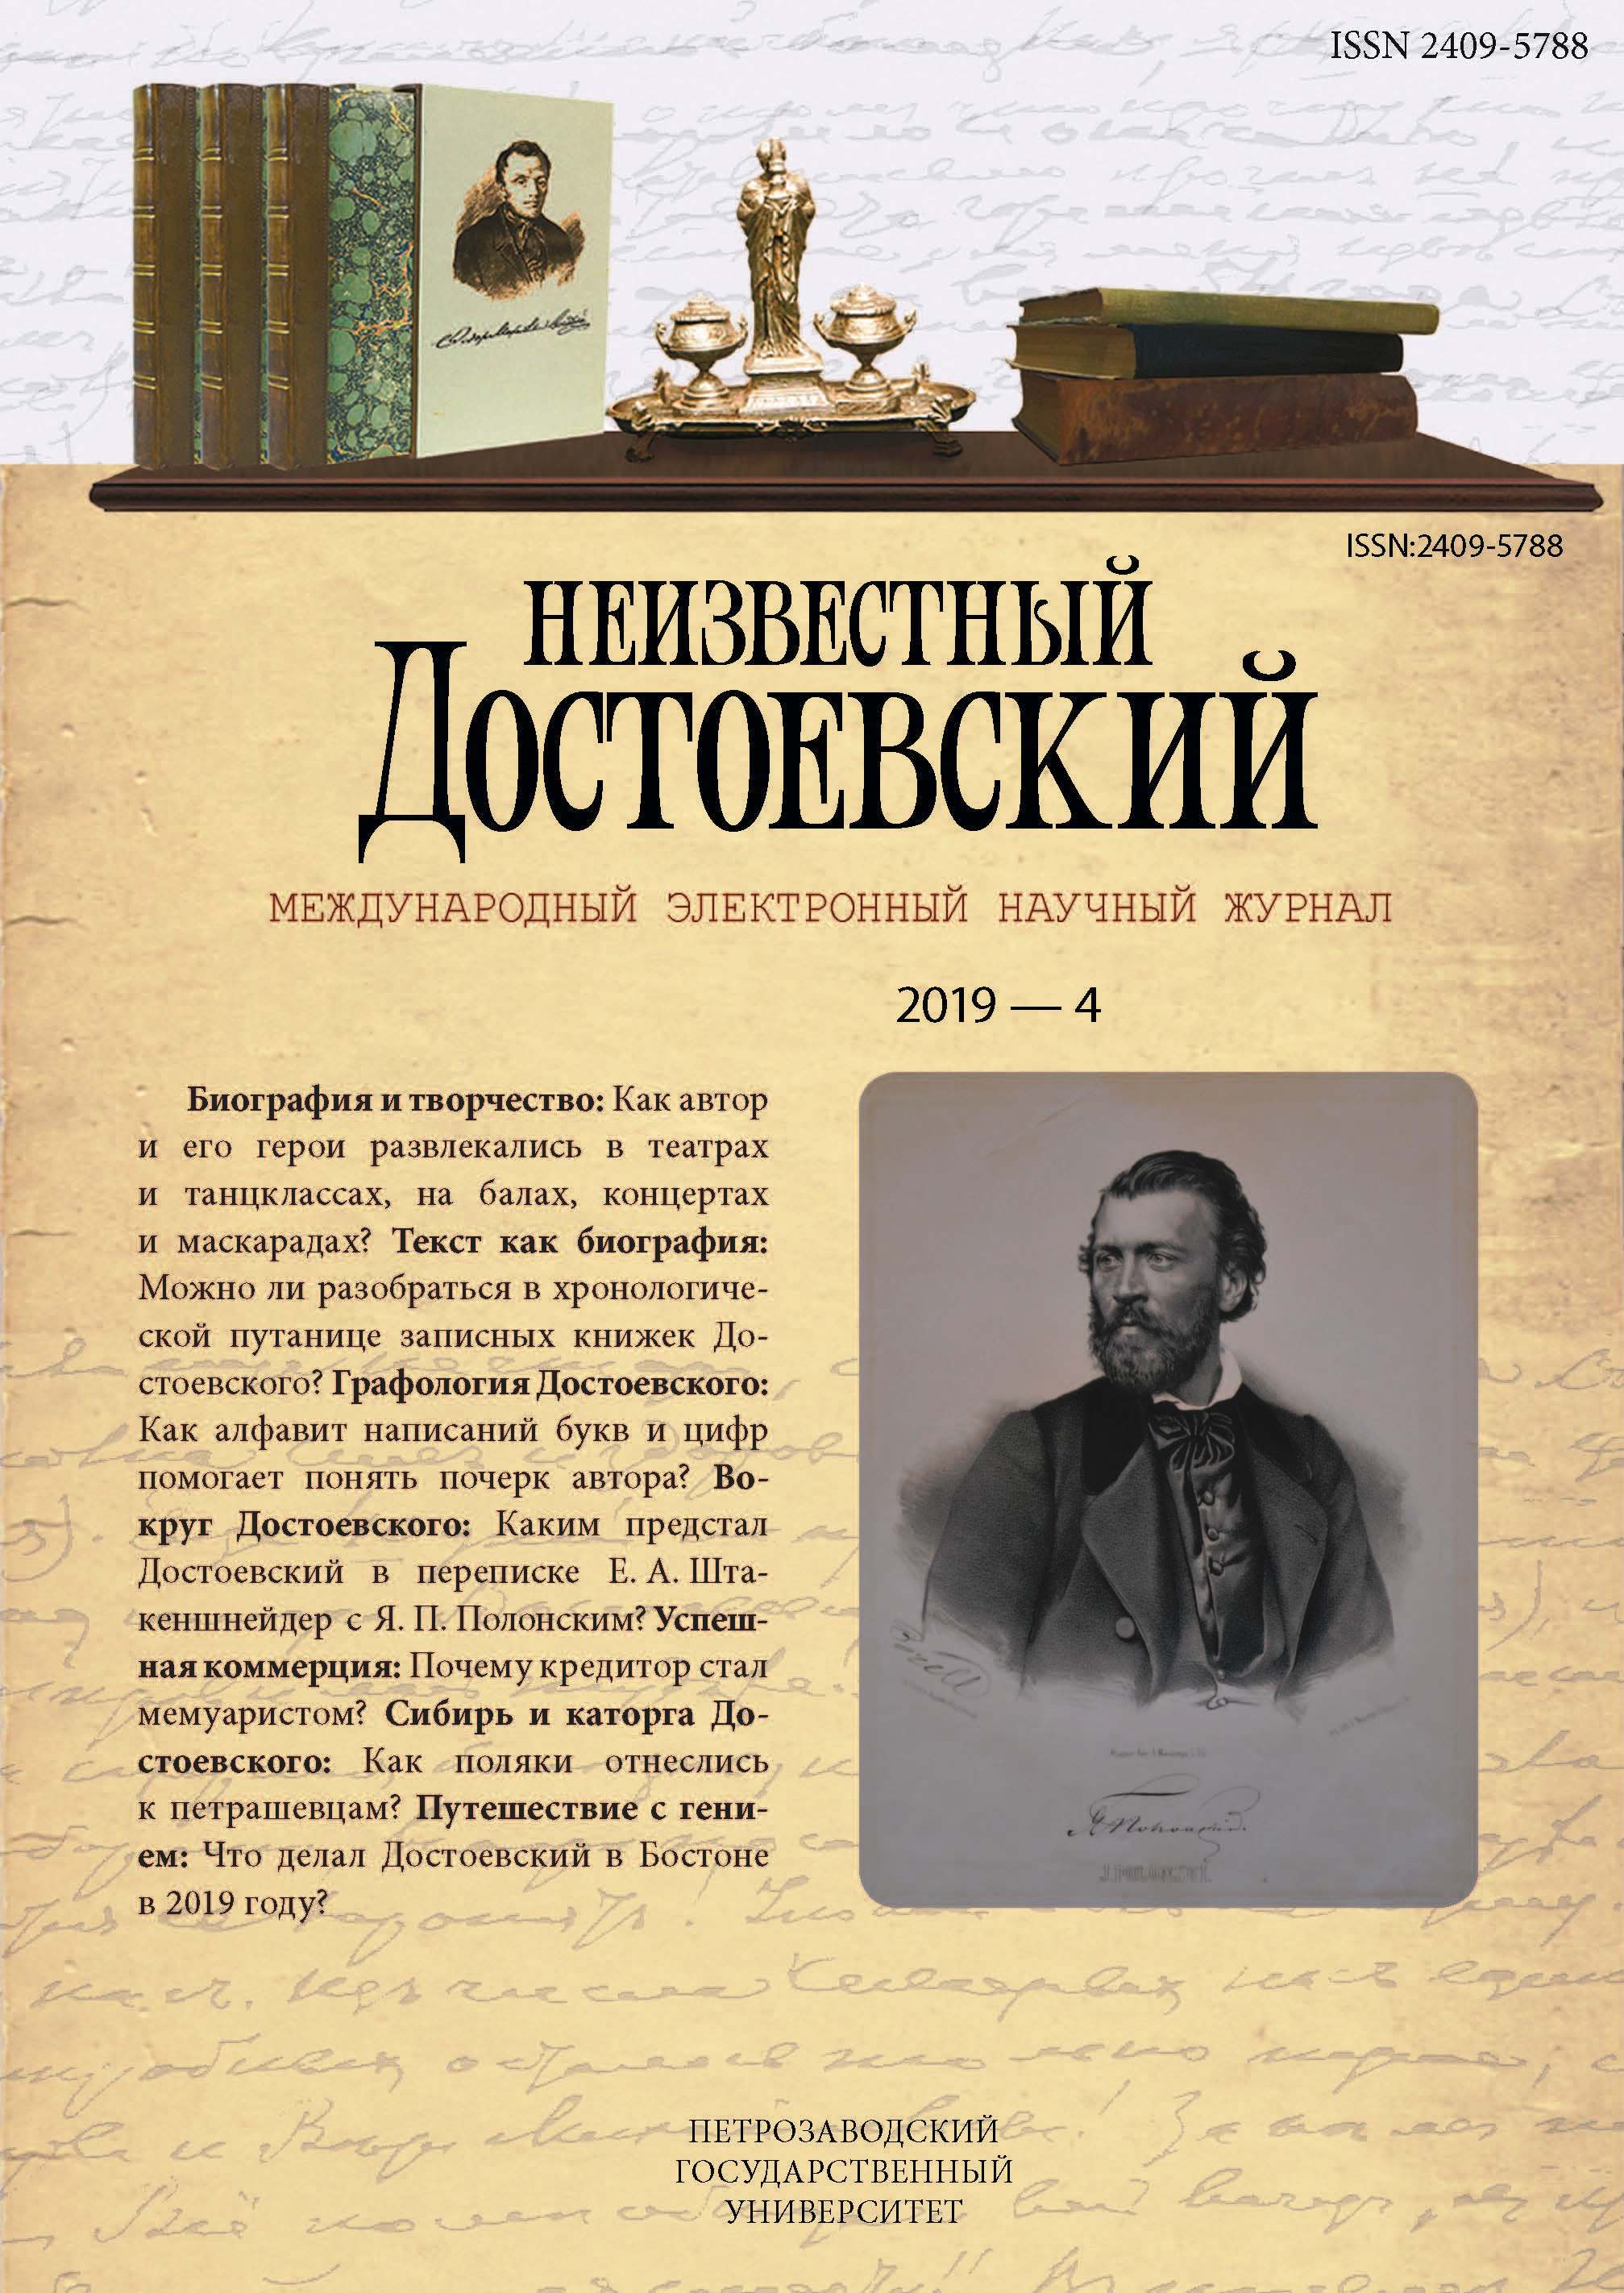 Ф. М. Достоевский в переписке Е. А. Штакеншнейдер с Я. П. Полонским